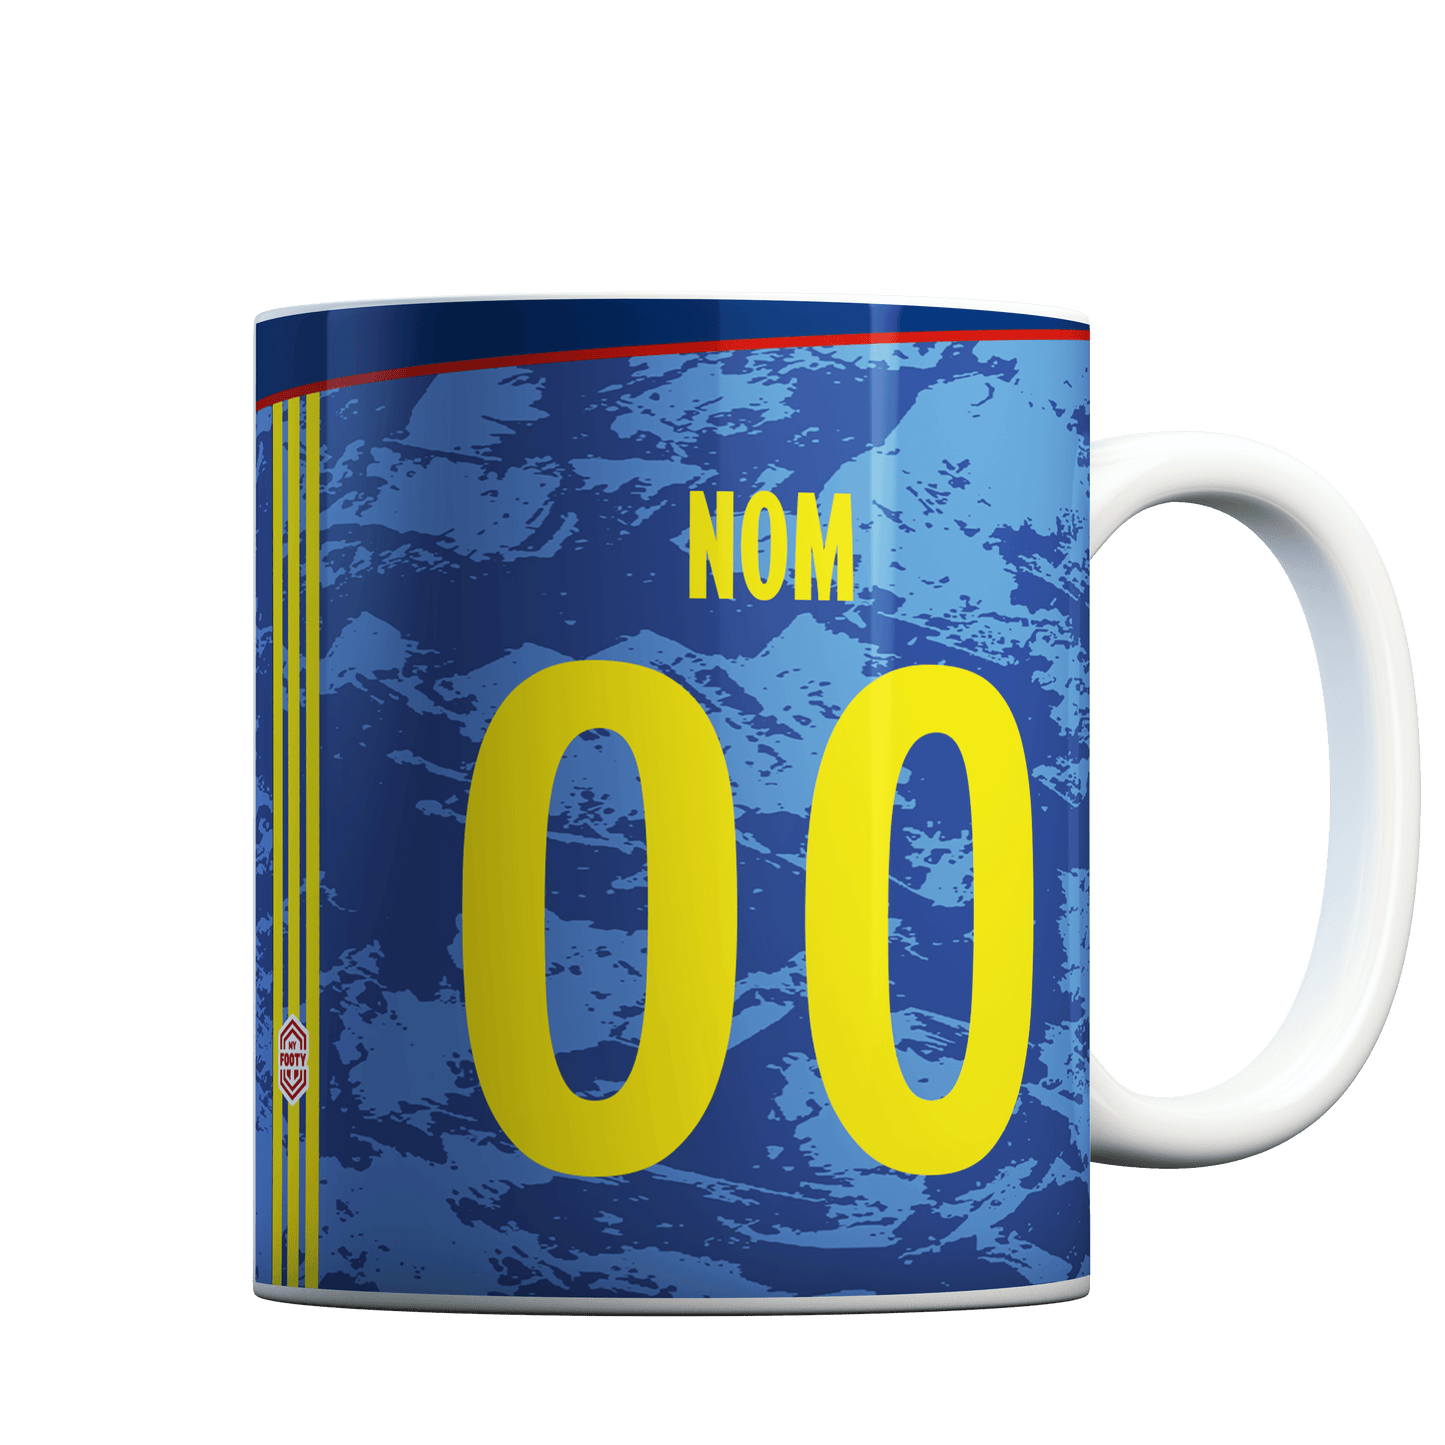 Footy Mug - Colombie Exterieur